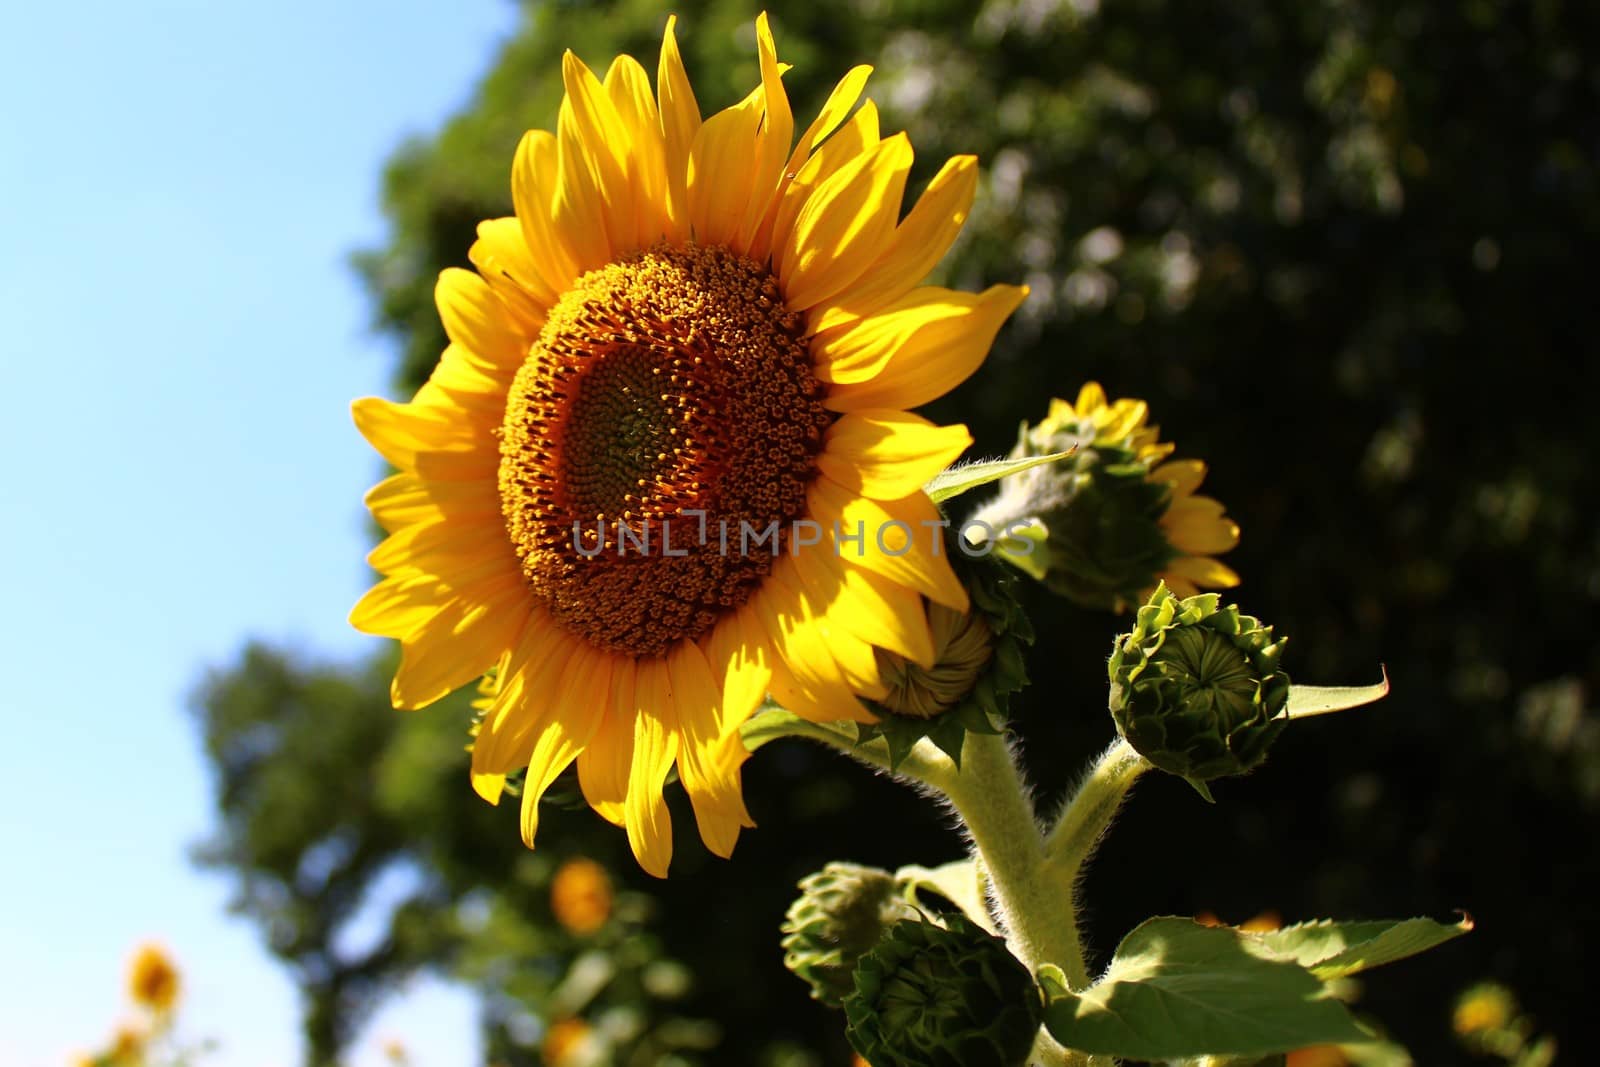 a sunflower field by martina_unbehauen